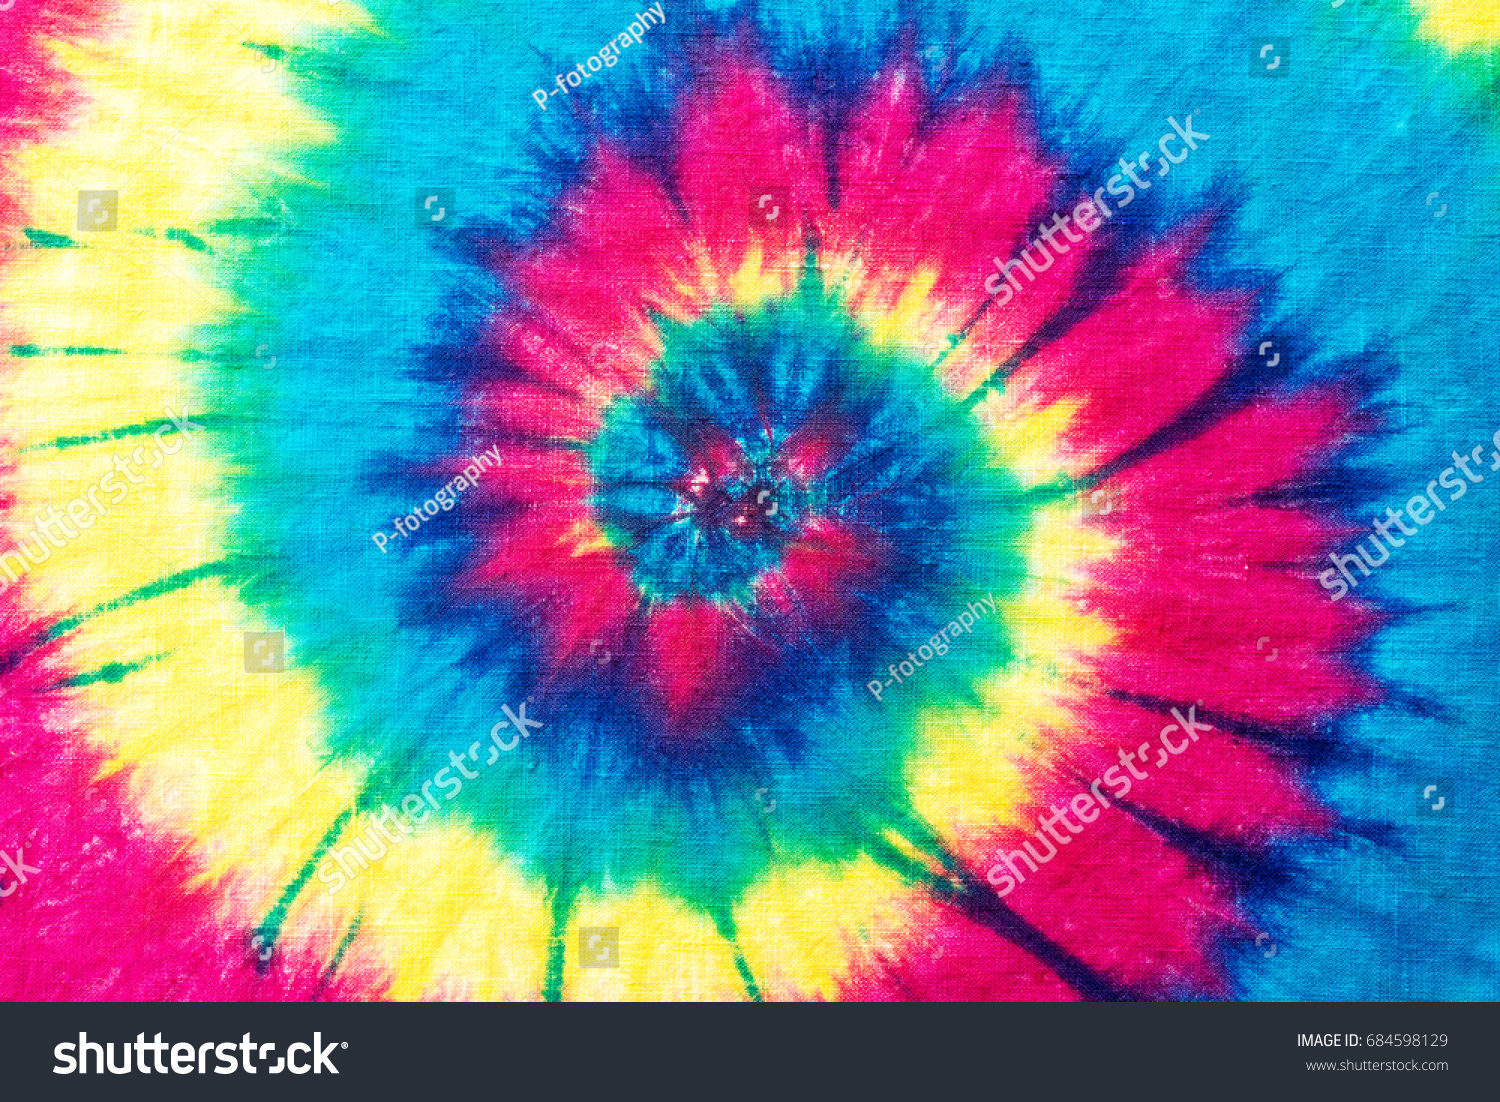 Rainbow Spiral Tie Dye Pattern Abstract Stock Illustration 684598129 ...